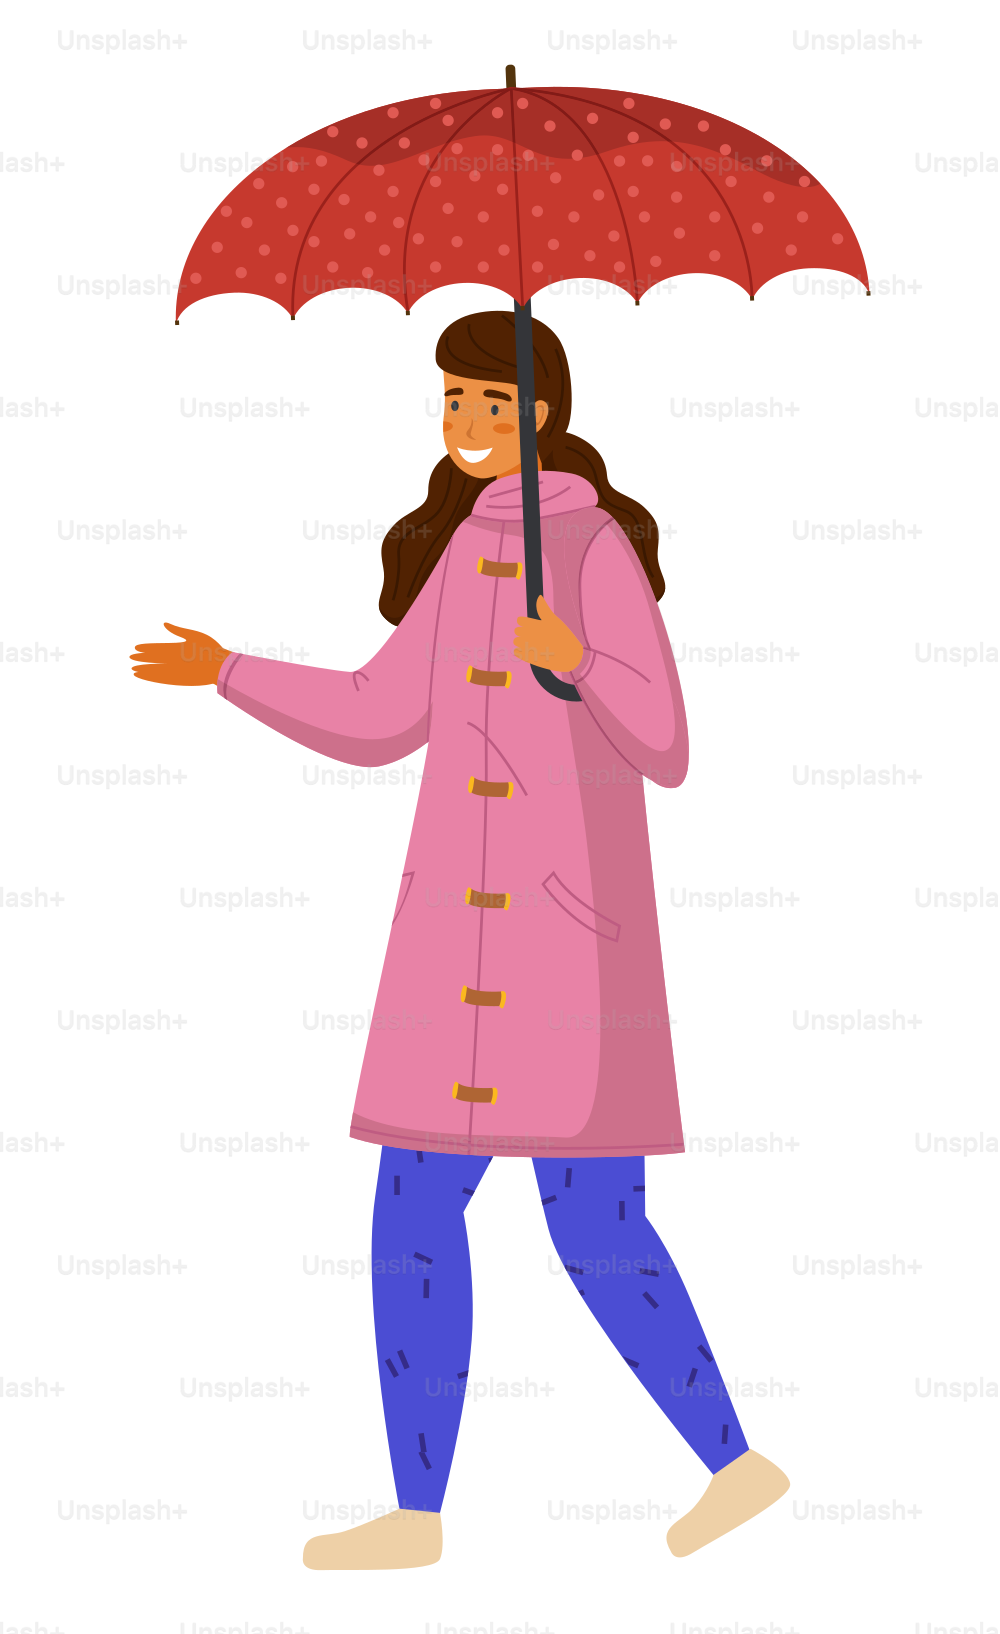 Chica feliz con impermeable rosa y pantalones azules con paraguas punteado rojo camina con la mano extendida. Empieza a llover. El clima lluvioso no estropea el estado de ánimo. Niña camina bajo la lluvia de otoño. Imagen vectorial plana